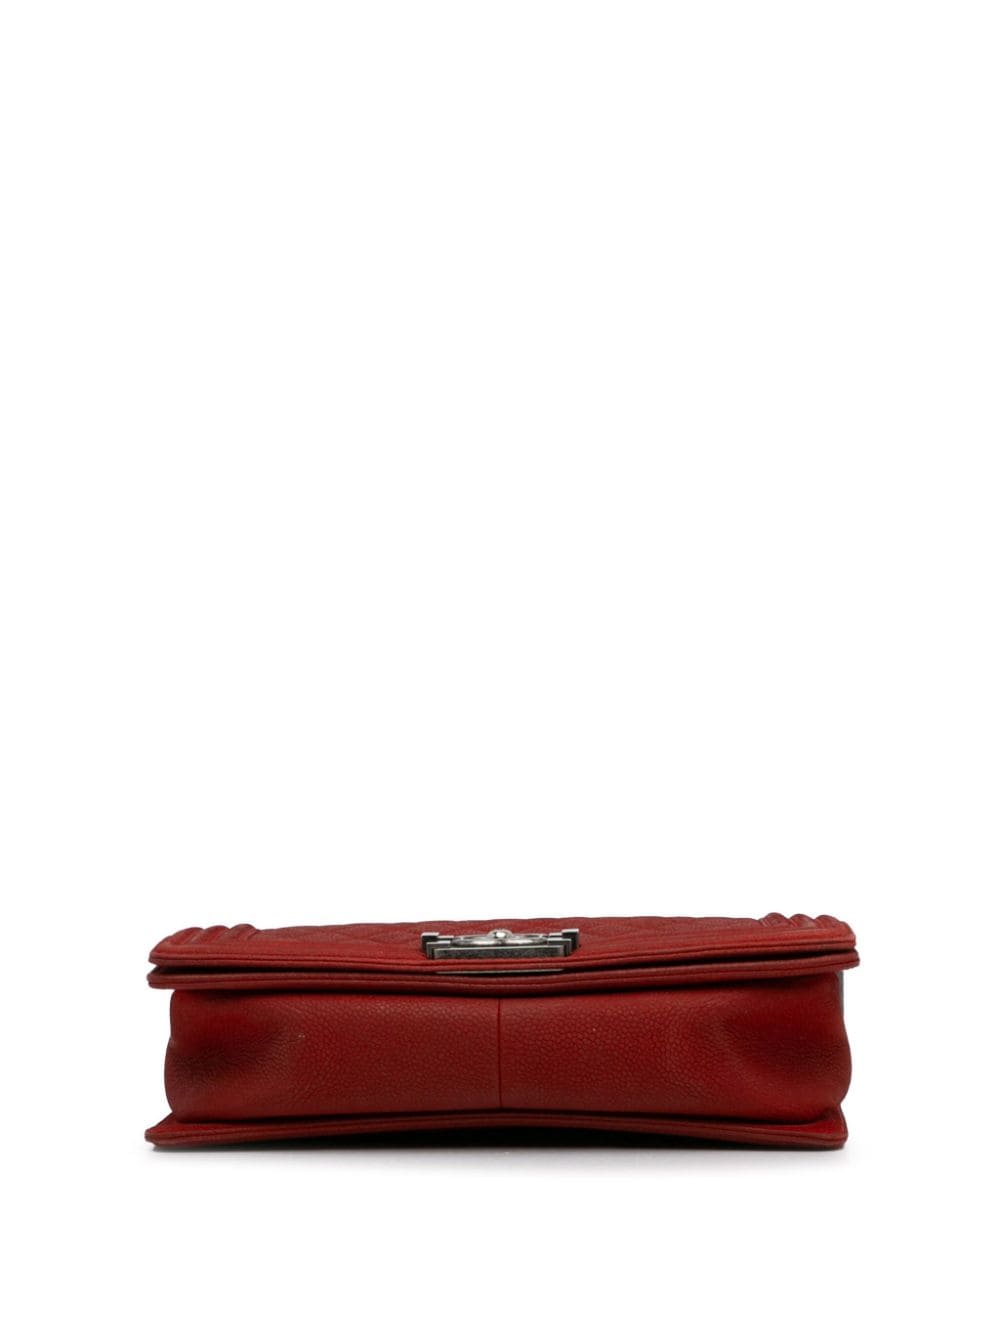 Pre-owned Chanel 2013-2014 Medium Caviar Boy Flap Crossbody Bag In Red